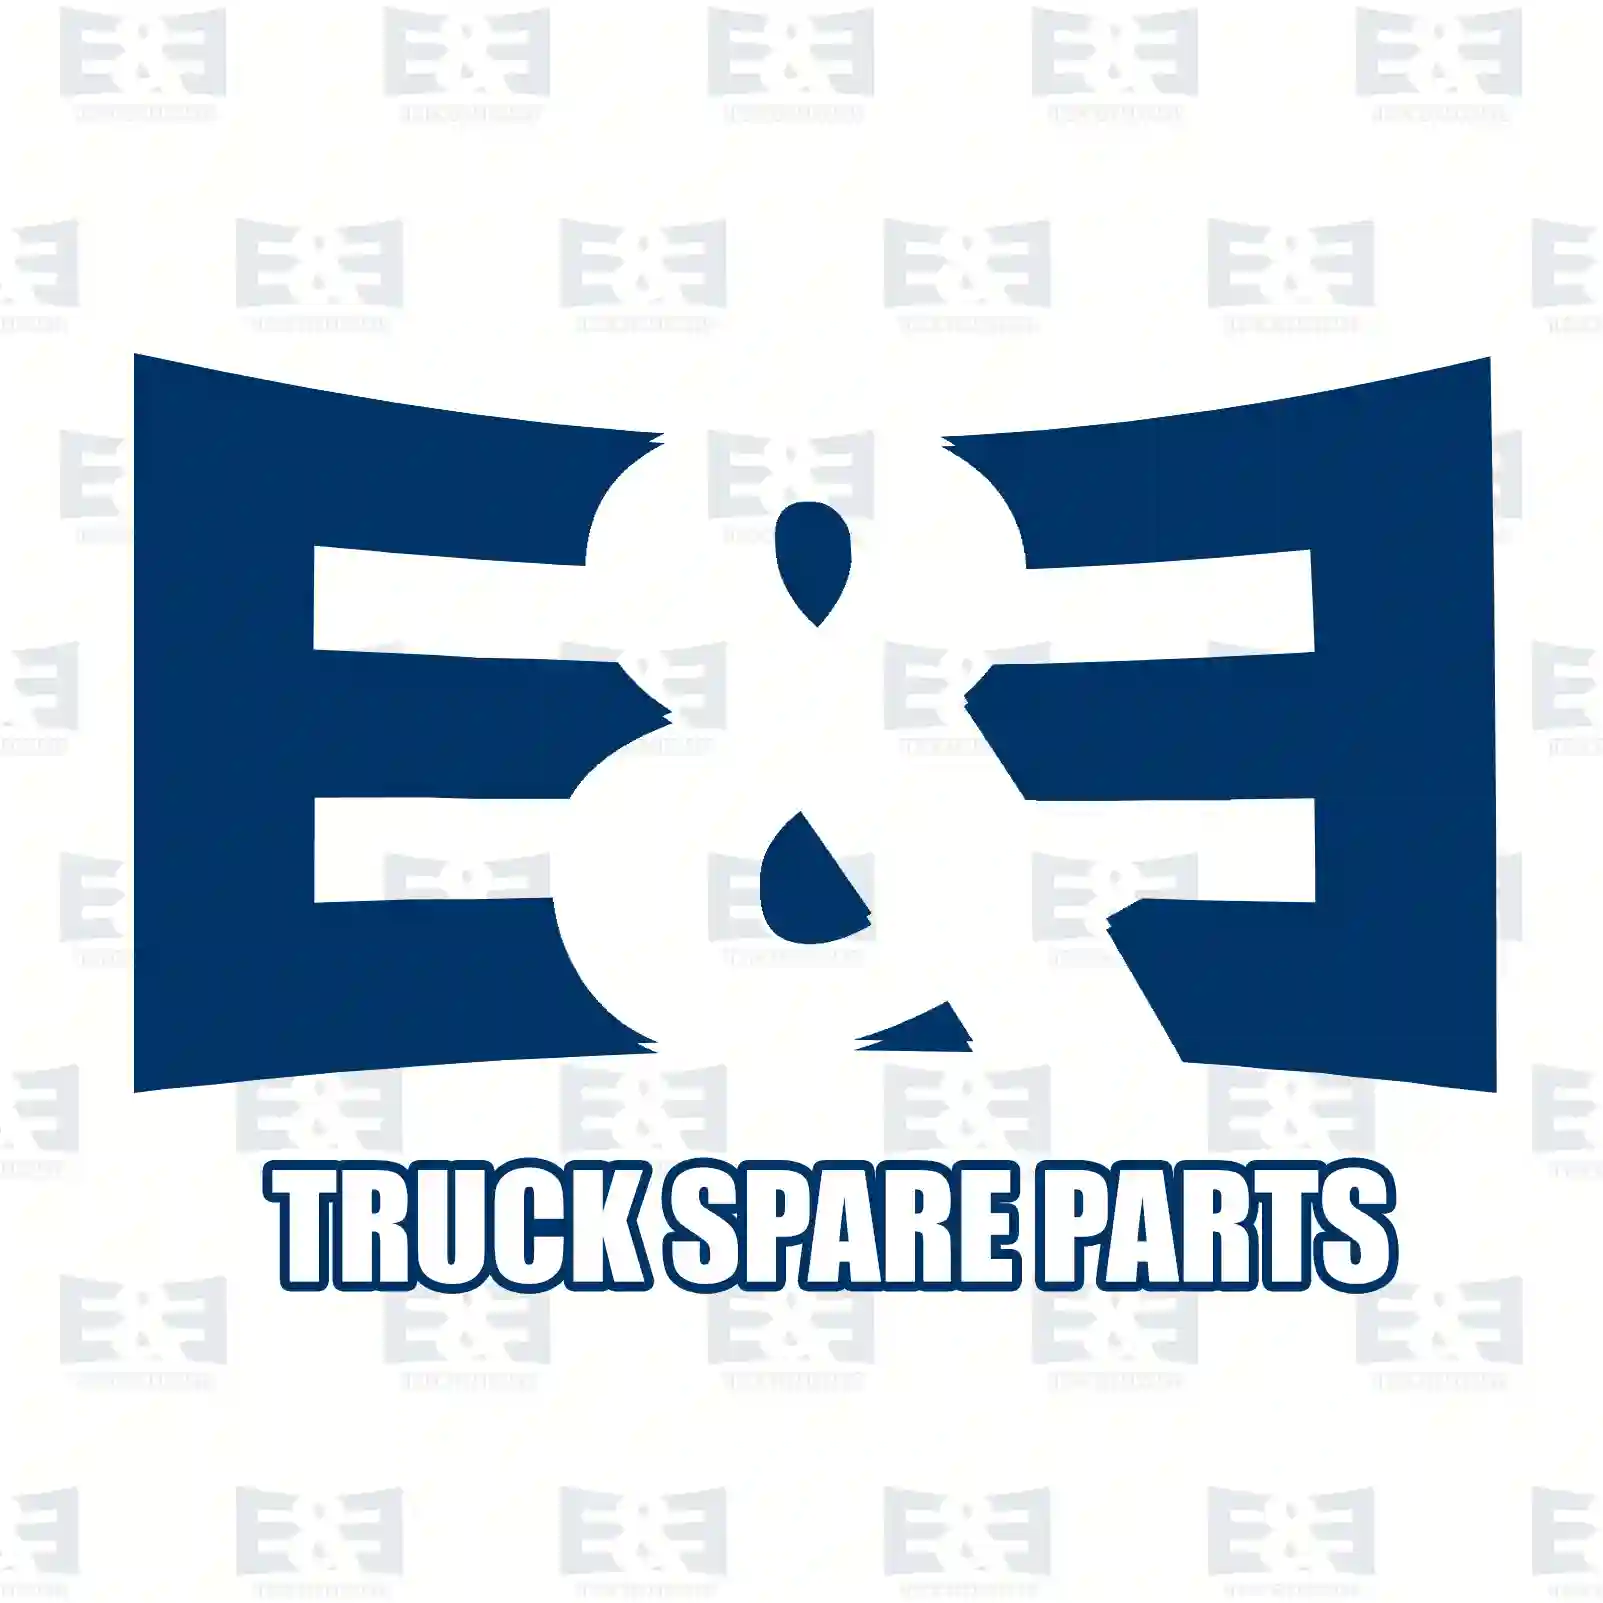 Bearing, shock absorber, 2E2283624, 1371348, 1377929, 1808435, 1815863, 6C11-3K099-AB, BK21-3K099-AC ||  2E2283624 E&E Truck Spare Parts | Truck Spare Parts, Auotomotive Spare Parts Bearing, shock absorber, 2E2283624, 1371348, 1377929, 1808435, 1815863, 6C11-3K099-AB, BK21-3K099-AC ||  2E2283624 E&E Truck Spare Parts | Truck Spare Parts, Auotomotive Spare Parts